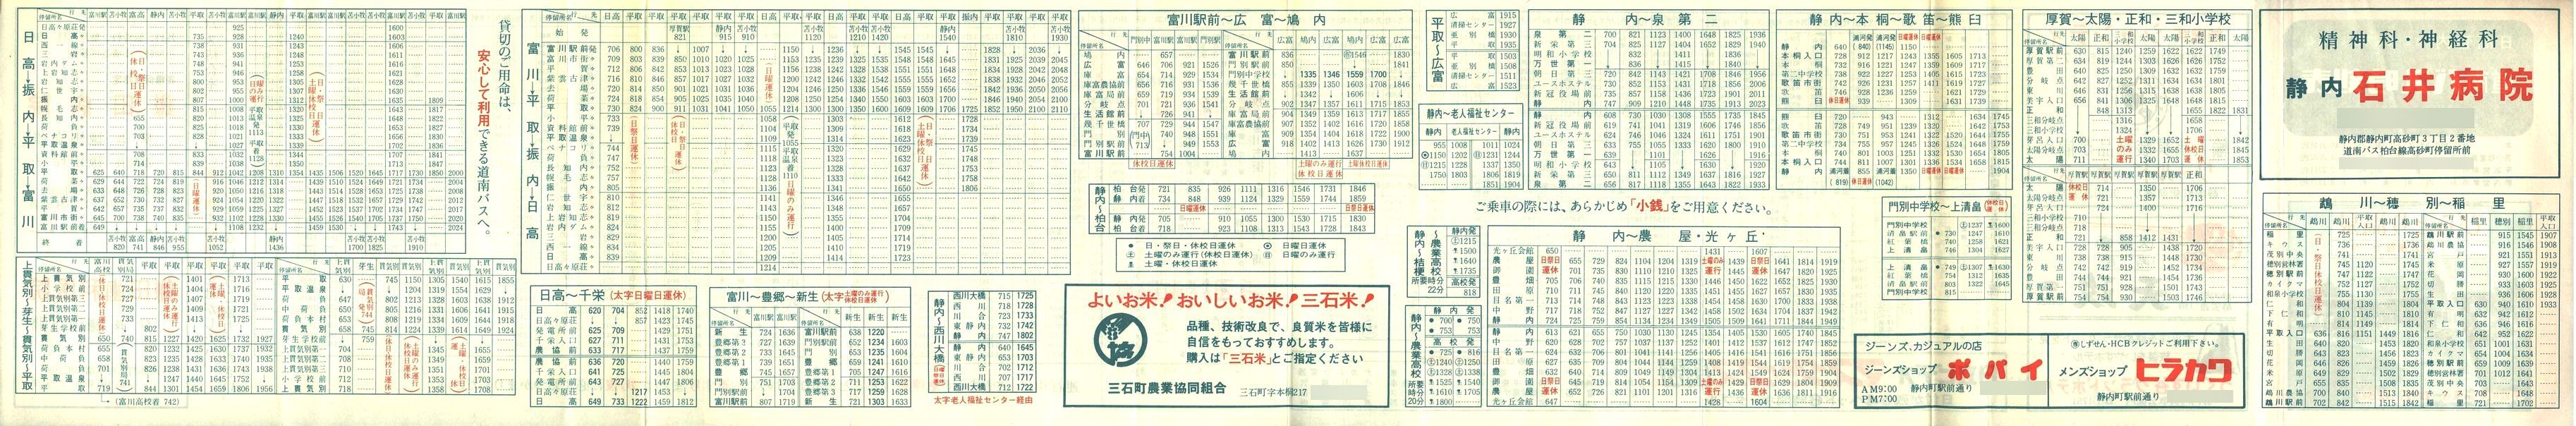 1982-04-04改正_道南バス_日高管内時刻表裏面